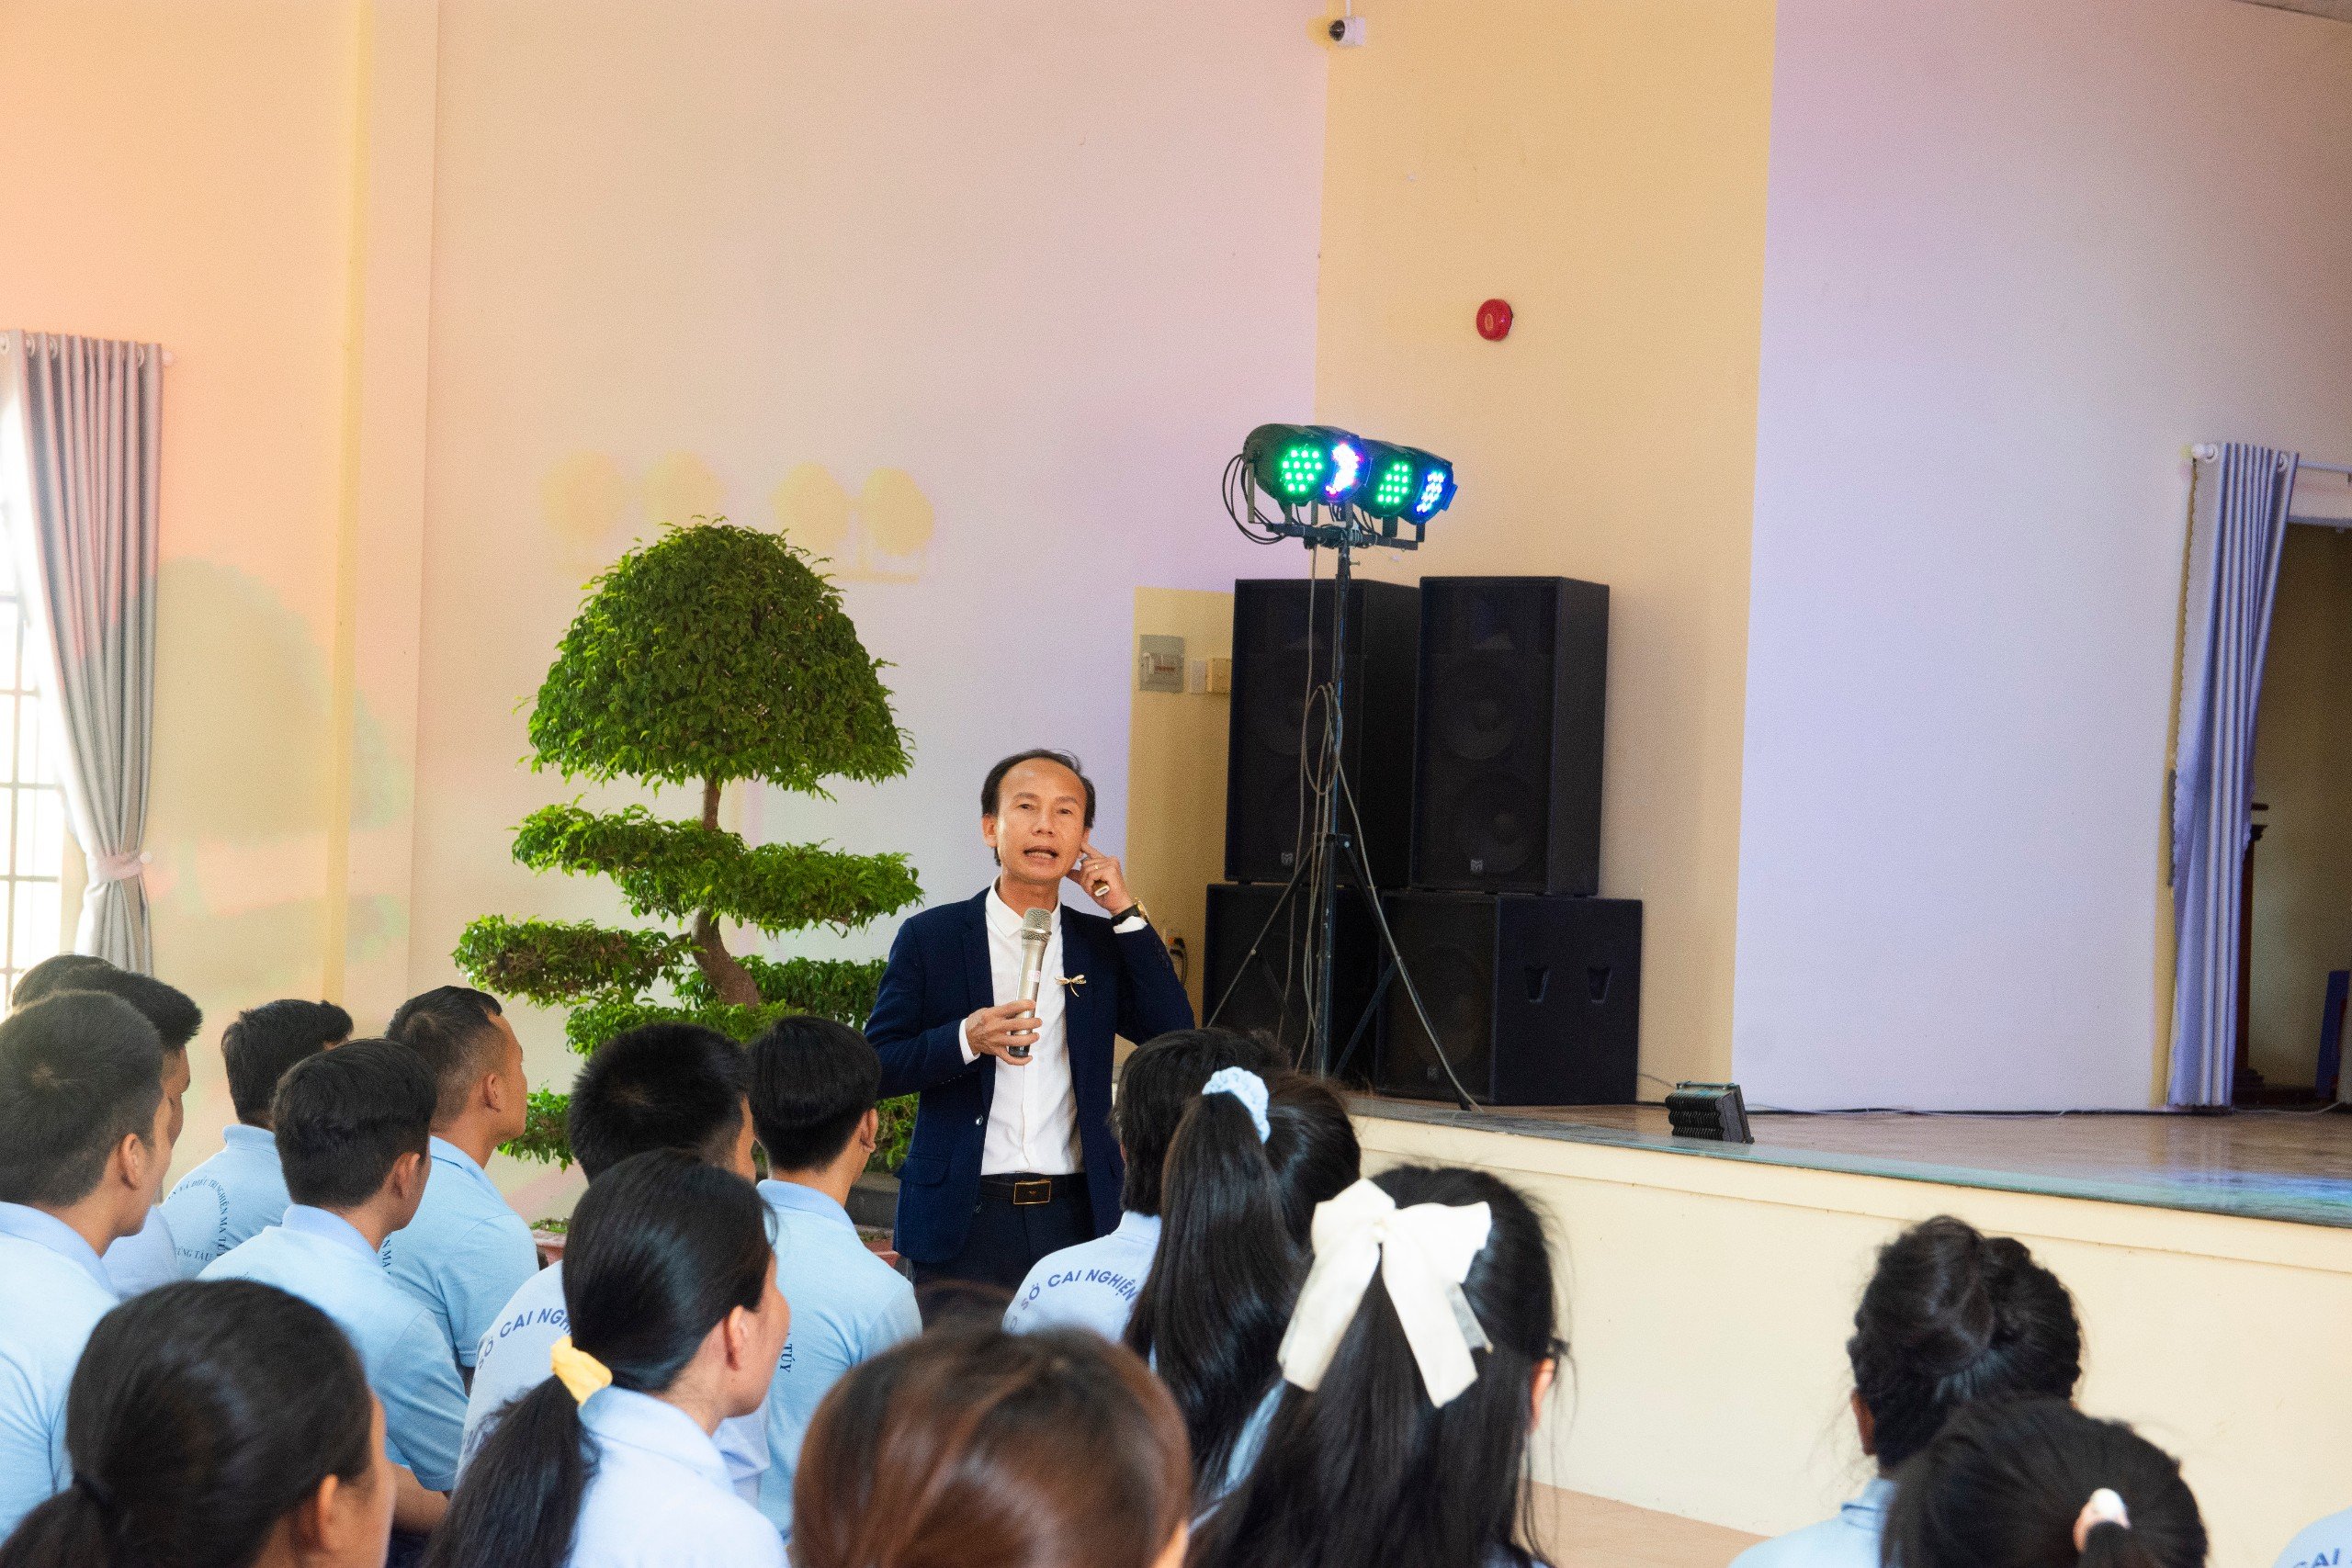 Tiến sĩ Huỳnh Anh Bình, Giám đốc Trung tâm Hướng nghiệp TP.Hồ Chí Minh đến chia sẻ nhiều câu chuyện đến với học viên.